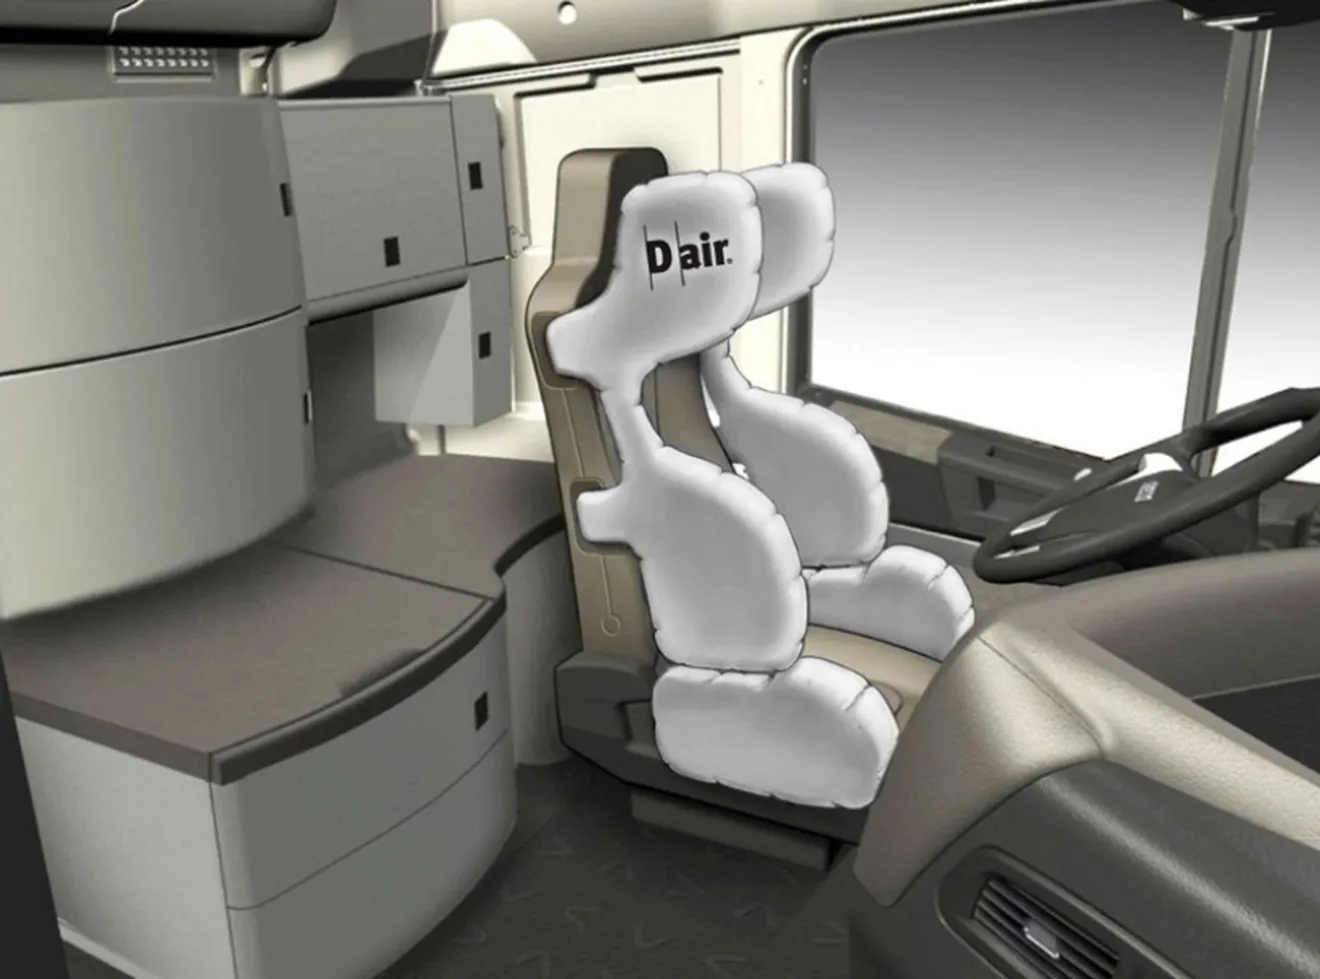 Iveco y Dainese desarrollan un airbag envolvente para vehículos comerciales